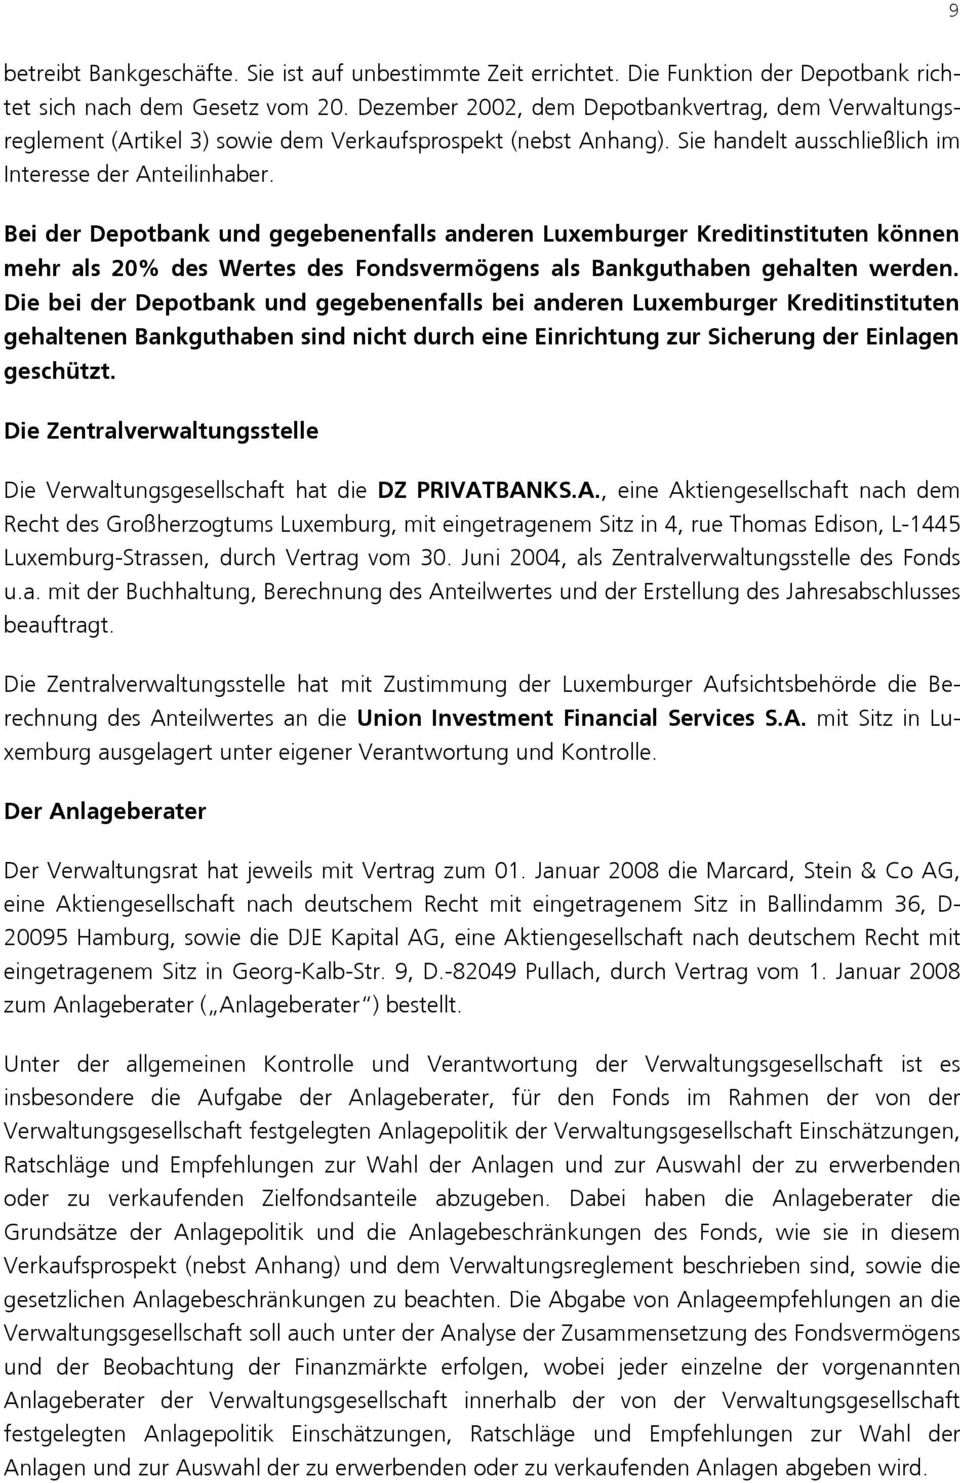 Bei der Depotbank und gegebenenfalls anderen Luxemburger Kreditinstituten können mehr als 20% des Wertes des Fondsvermögens als Bankguthaben gehalten werden.